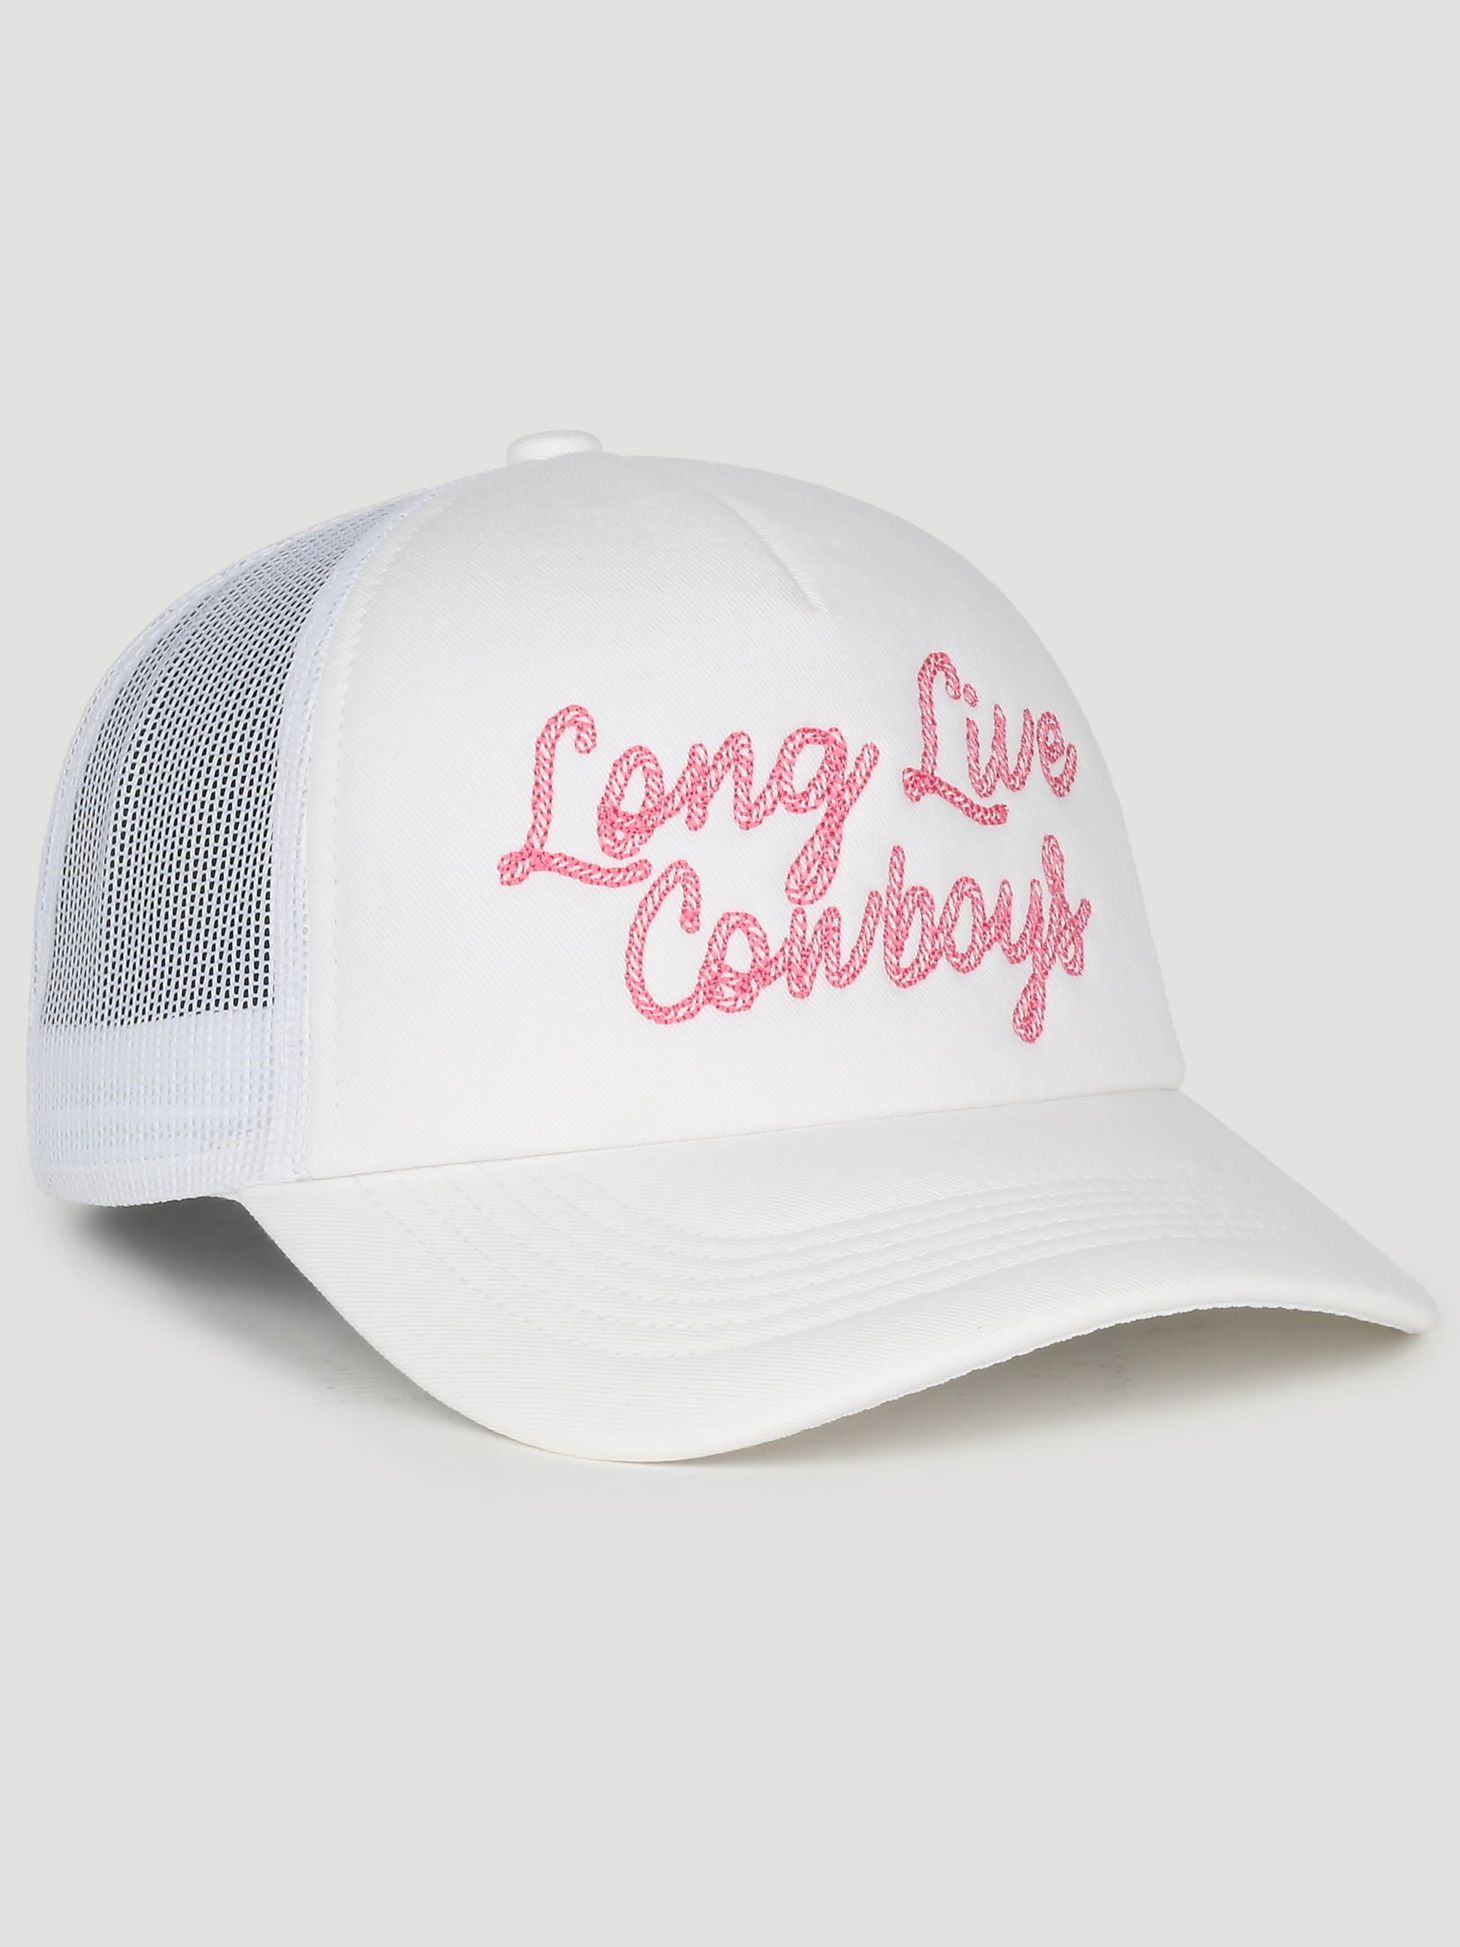 Long Live Cowboys® Baseball Cap in White | Wrangler